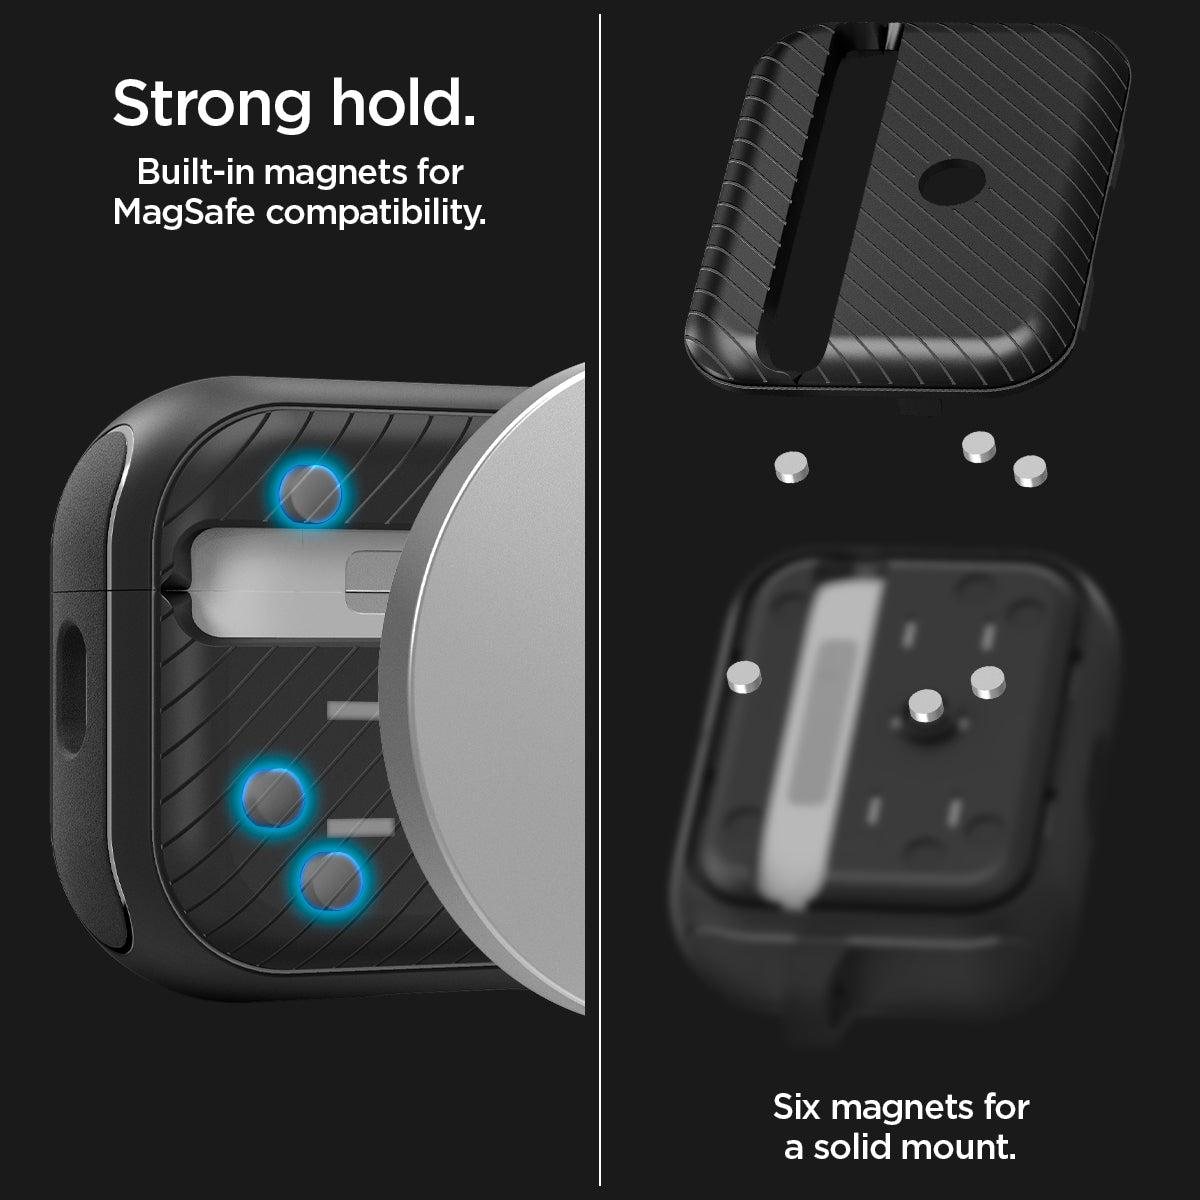 Spigen® Mag Armor (MagFit) ACS05484 Apple AirPods Pro 2 Case – Matte Black